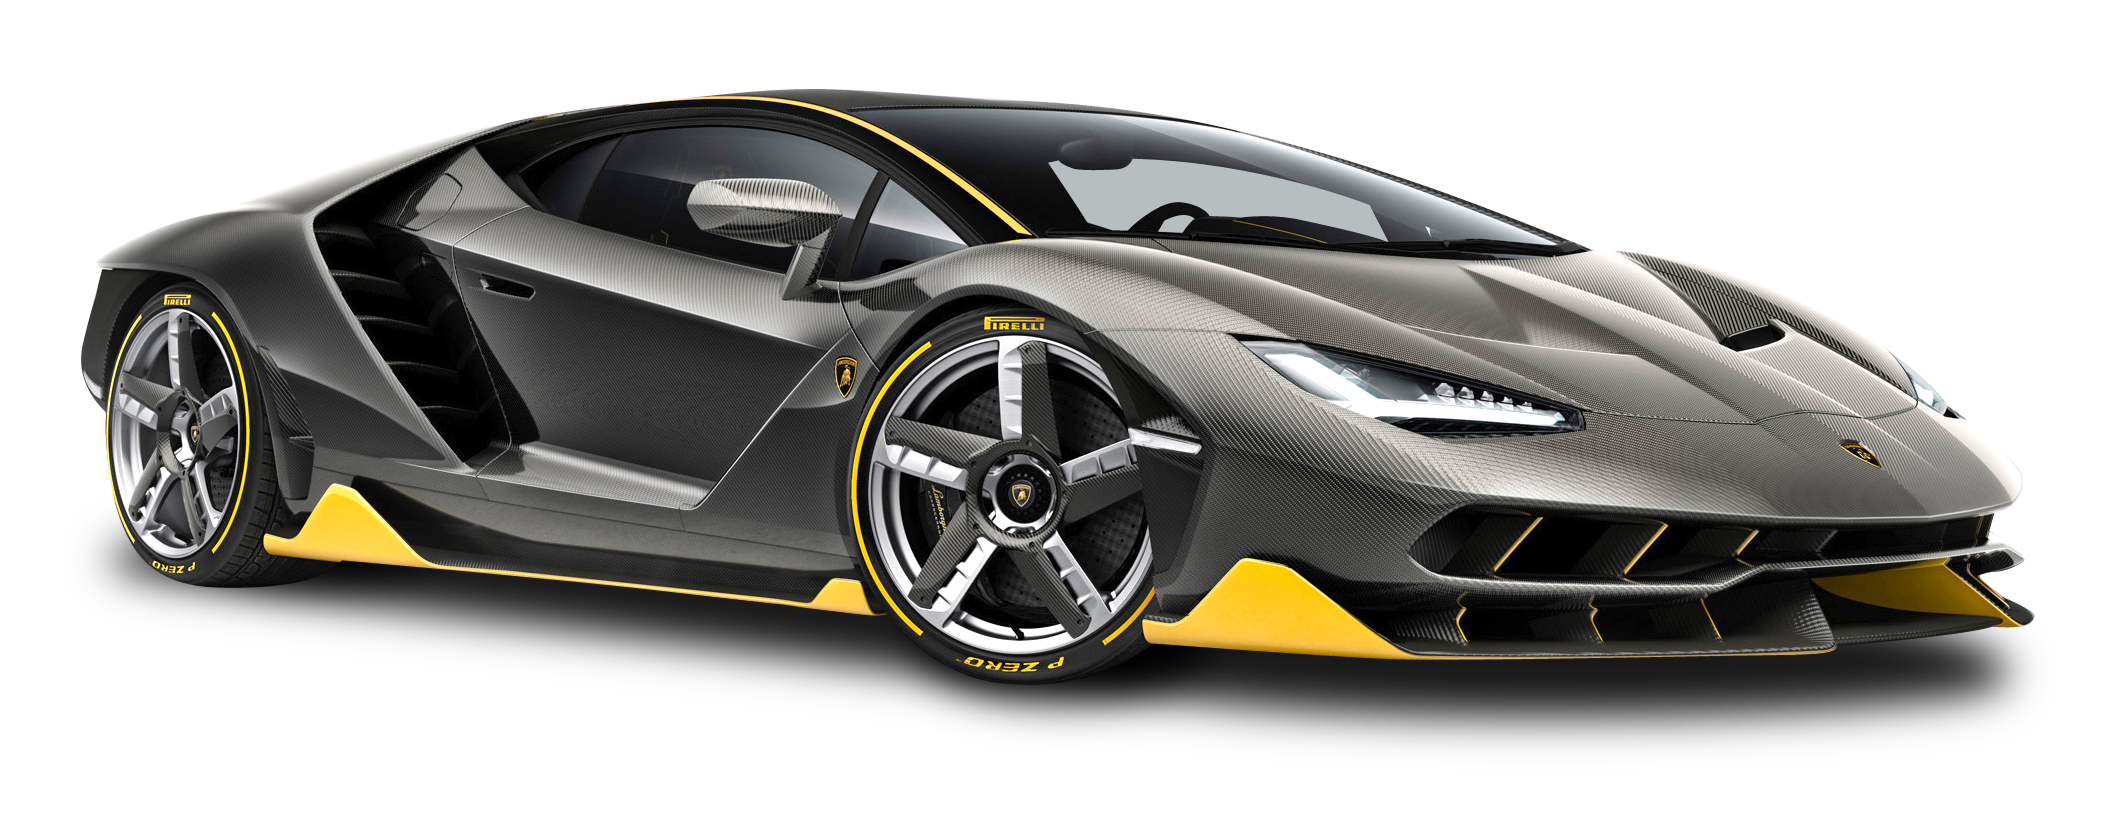 Download Lamborghini Centenario LP 770 4 Black Car PNG Image for Free